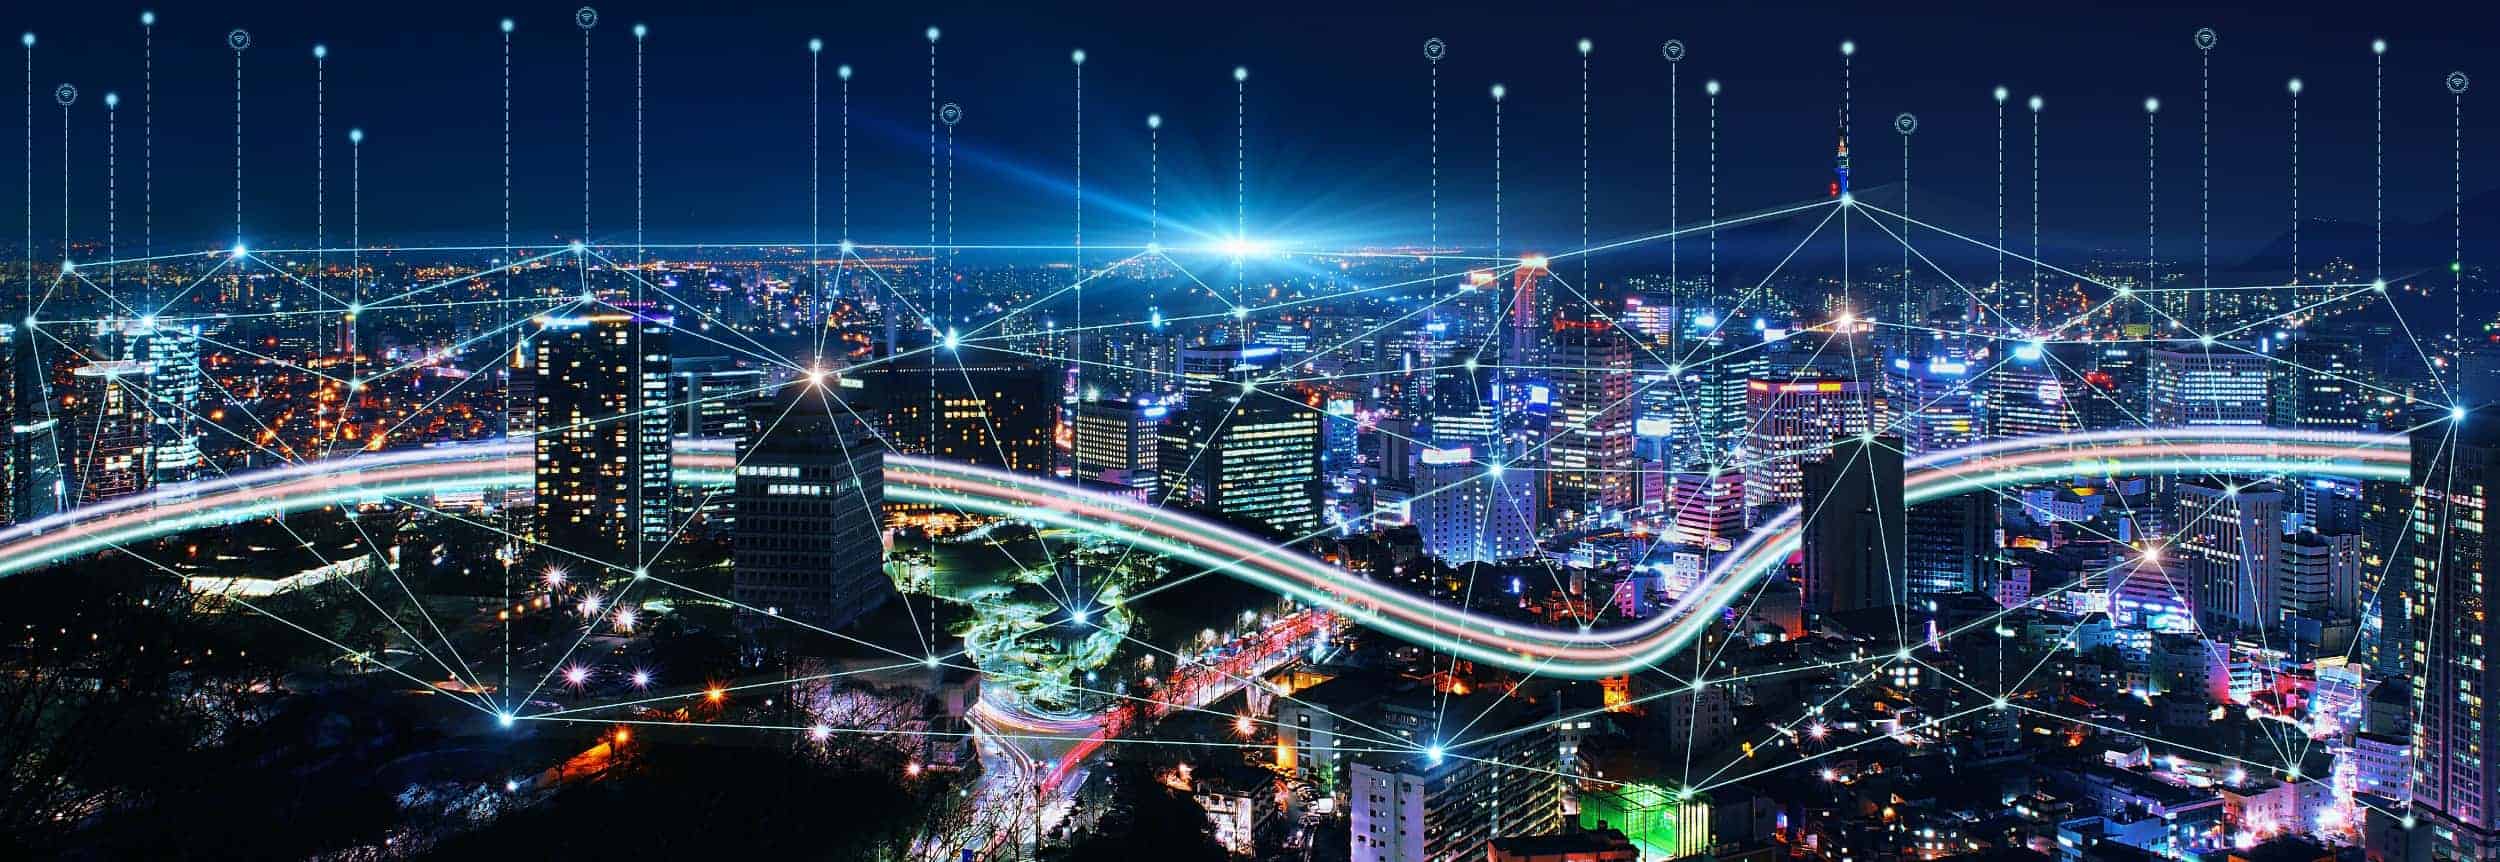 Eine innovative und nachhaltige Smart City ist mittels KVM Systemen von IHSE vernetzt, die Mobilität und einfaches Verkehrsmanagement ermöglichen. Das Ziel dabei ist es, Passagieren und Netzwerkbetreibern eine sichere und ressourcenschonende Erfahrung zu bieten.